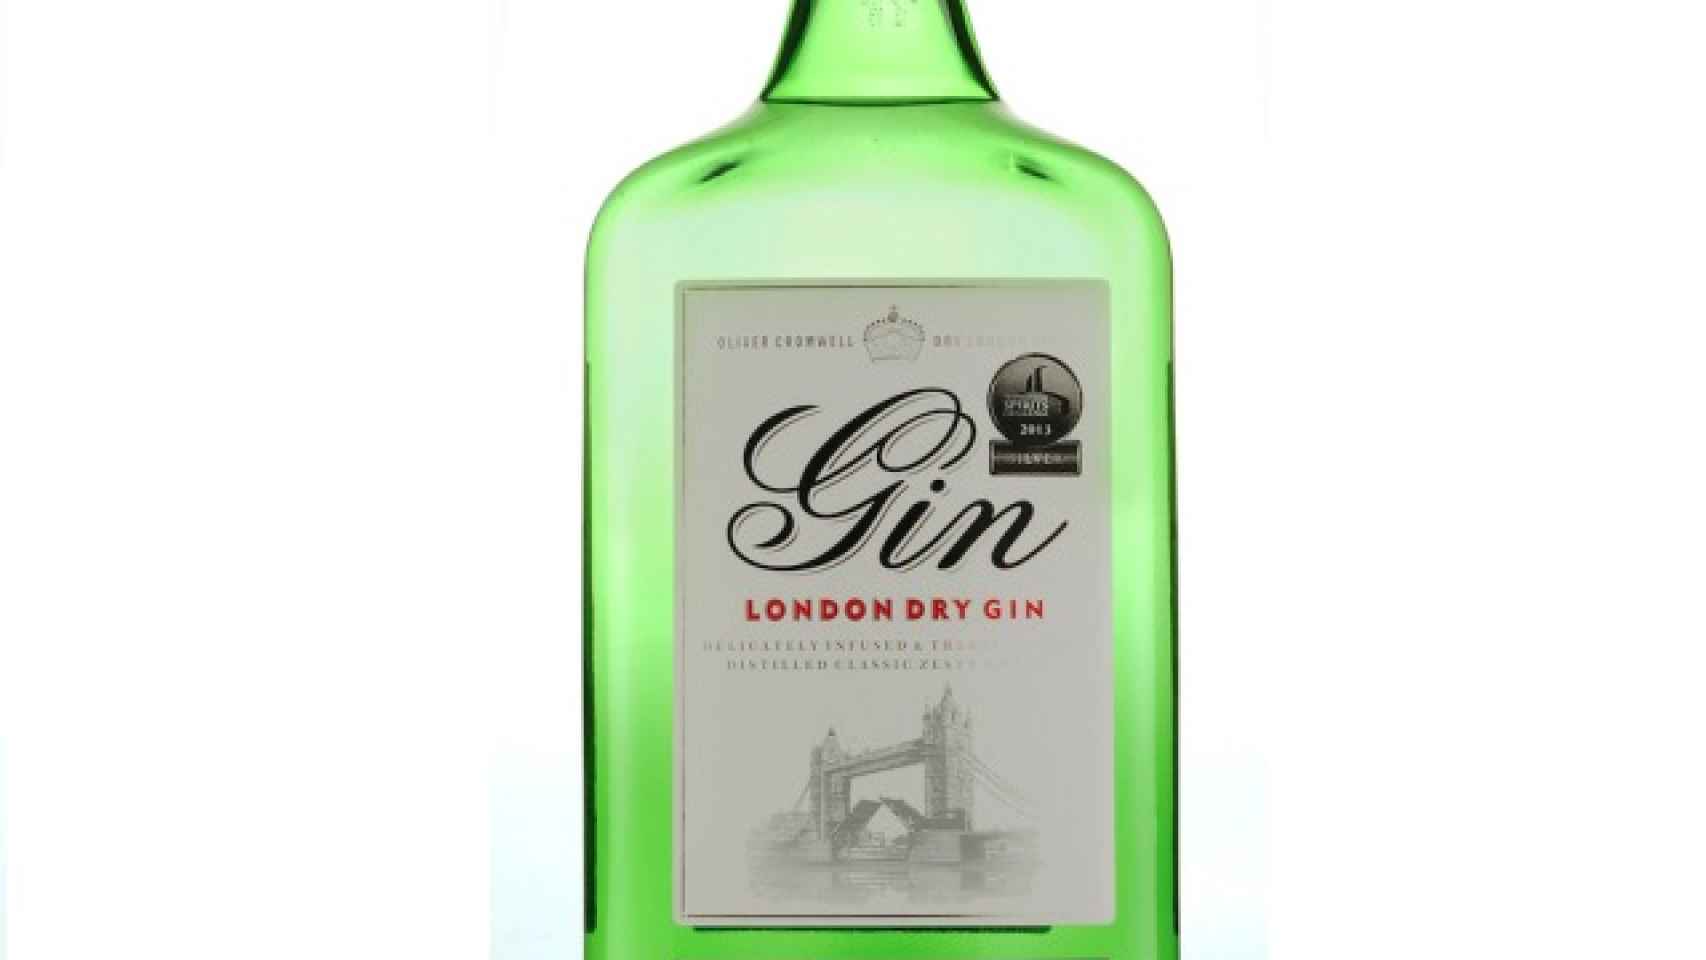 La botella de Oliver Cromwell London Dry Gin